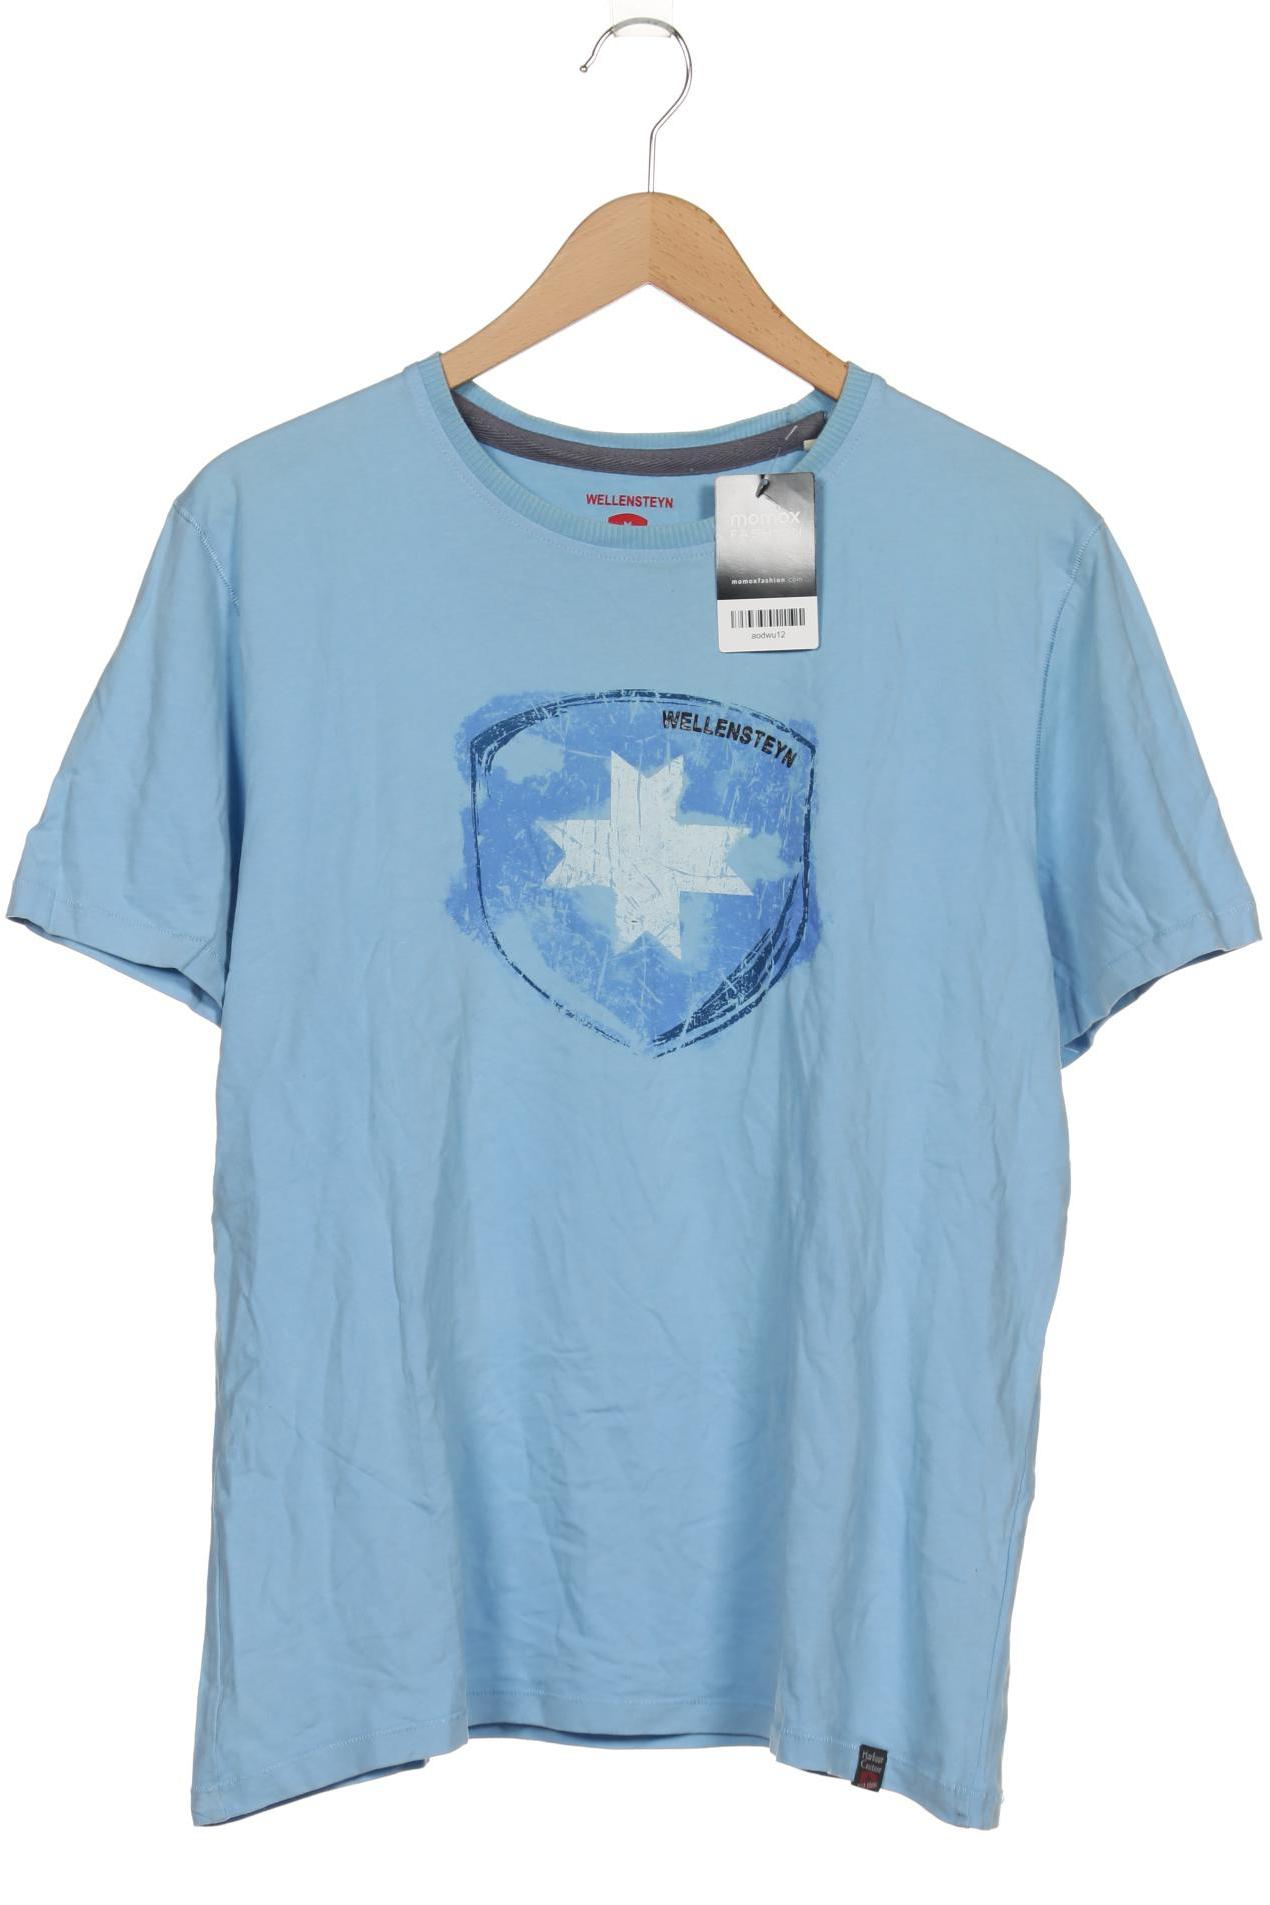 Wellensteyn Herren T-Shirt, blau von Wellensteyn